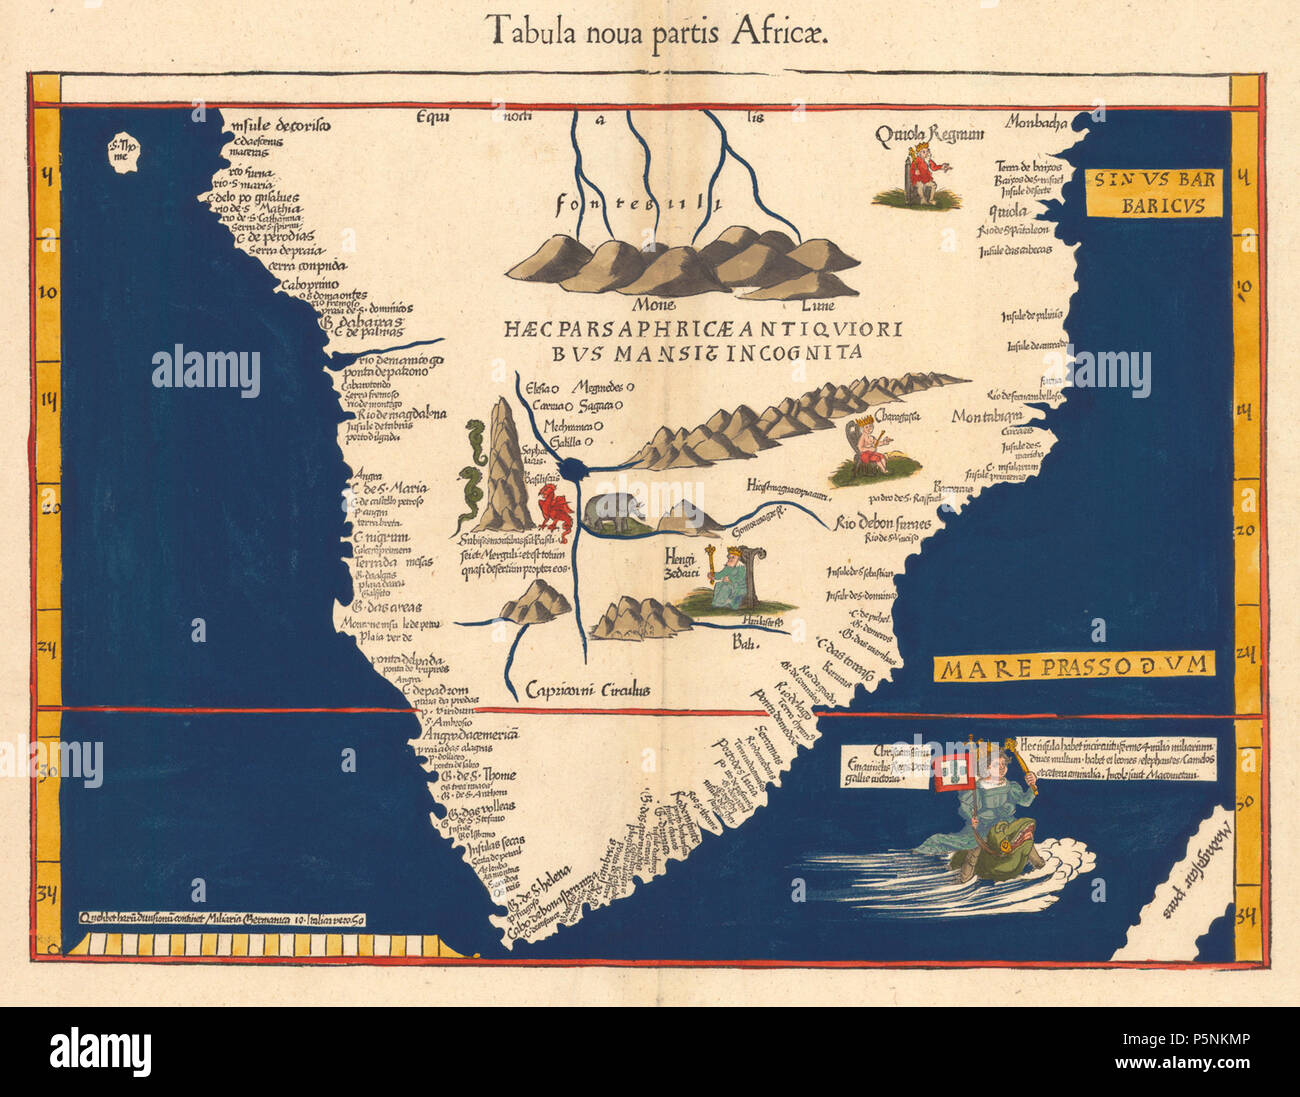 N/A. 1513 Karte von Martin Waldseemüller "Tabula noua partis Africae." ignoriert es früher Referenzen zu einem Sacaff oder Saaph See, die er an den Nil beziehen, und setzen Sie sie in Abessinien (Äthiopien) und zeigt die Berge des Mondes (Mone Lune) als Quelle des Nils. 1541. Martin Waldseemüller 17 1541 waldseemuller Karte von Afrika Stockfoto